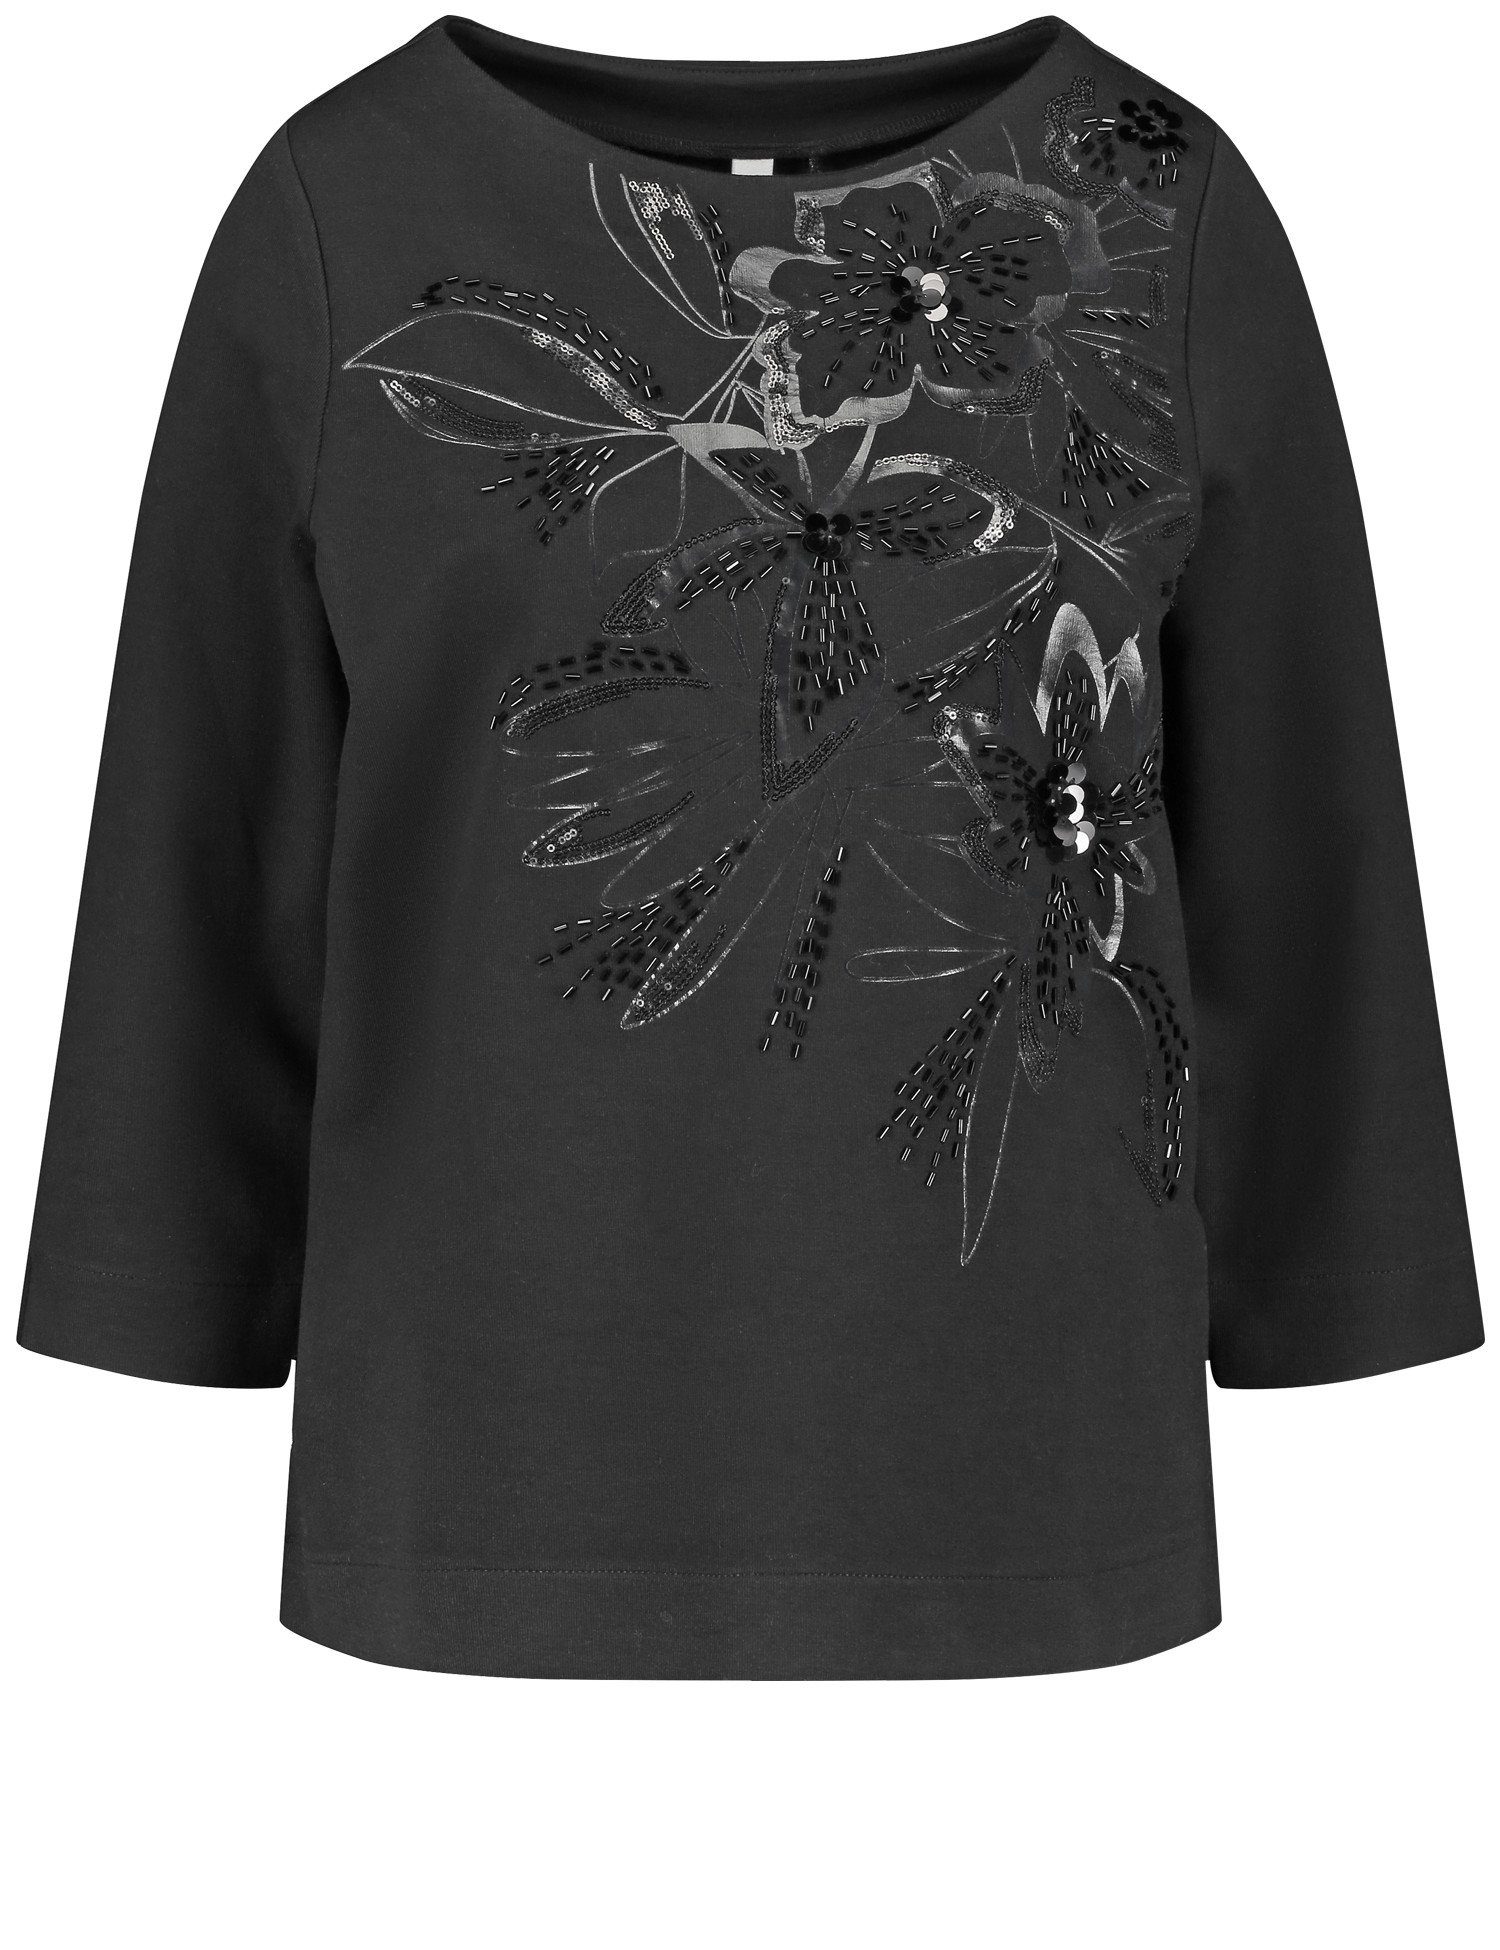 Pailletten WEBER 3/4 floralem Dekor Ziersteinchen Shirt GERRY mit und Arm aus 3/4-Arm-Shirt